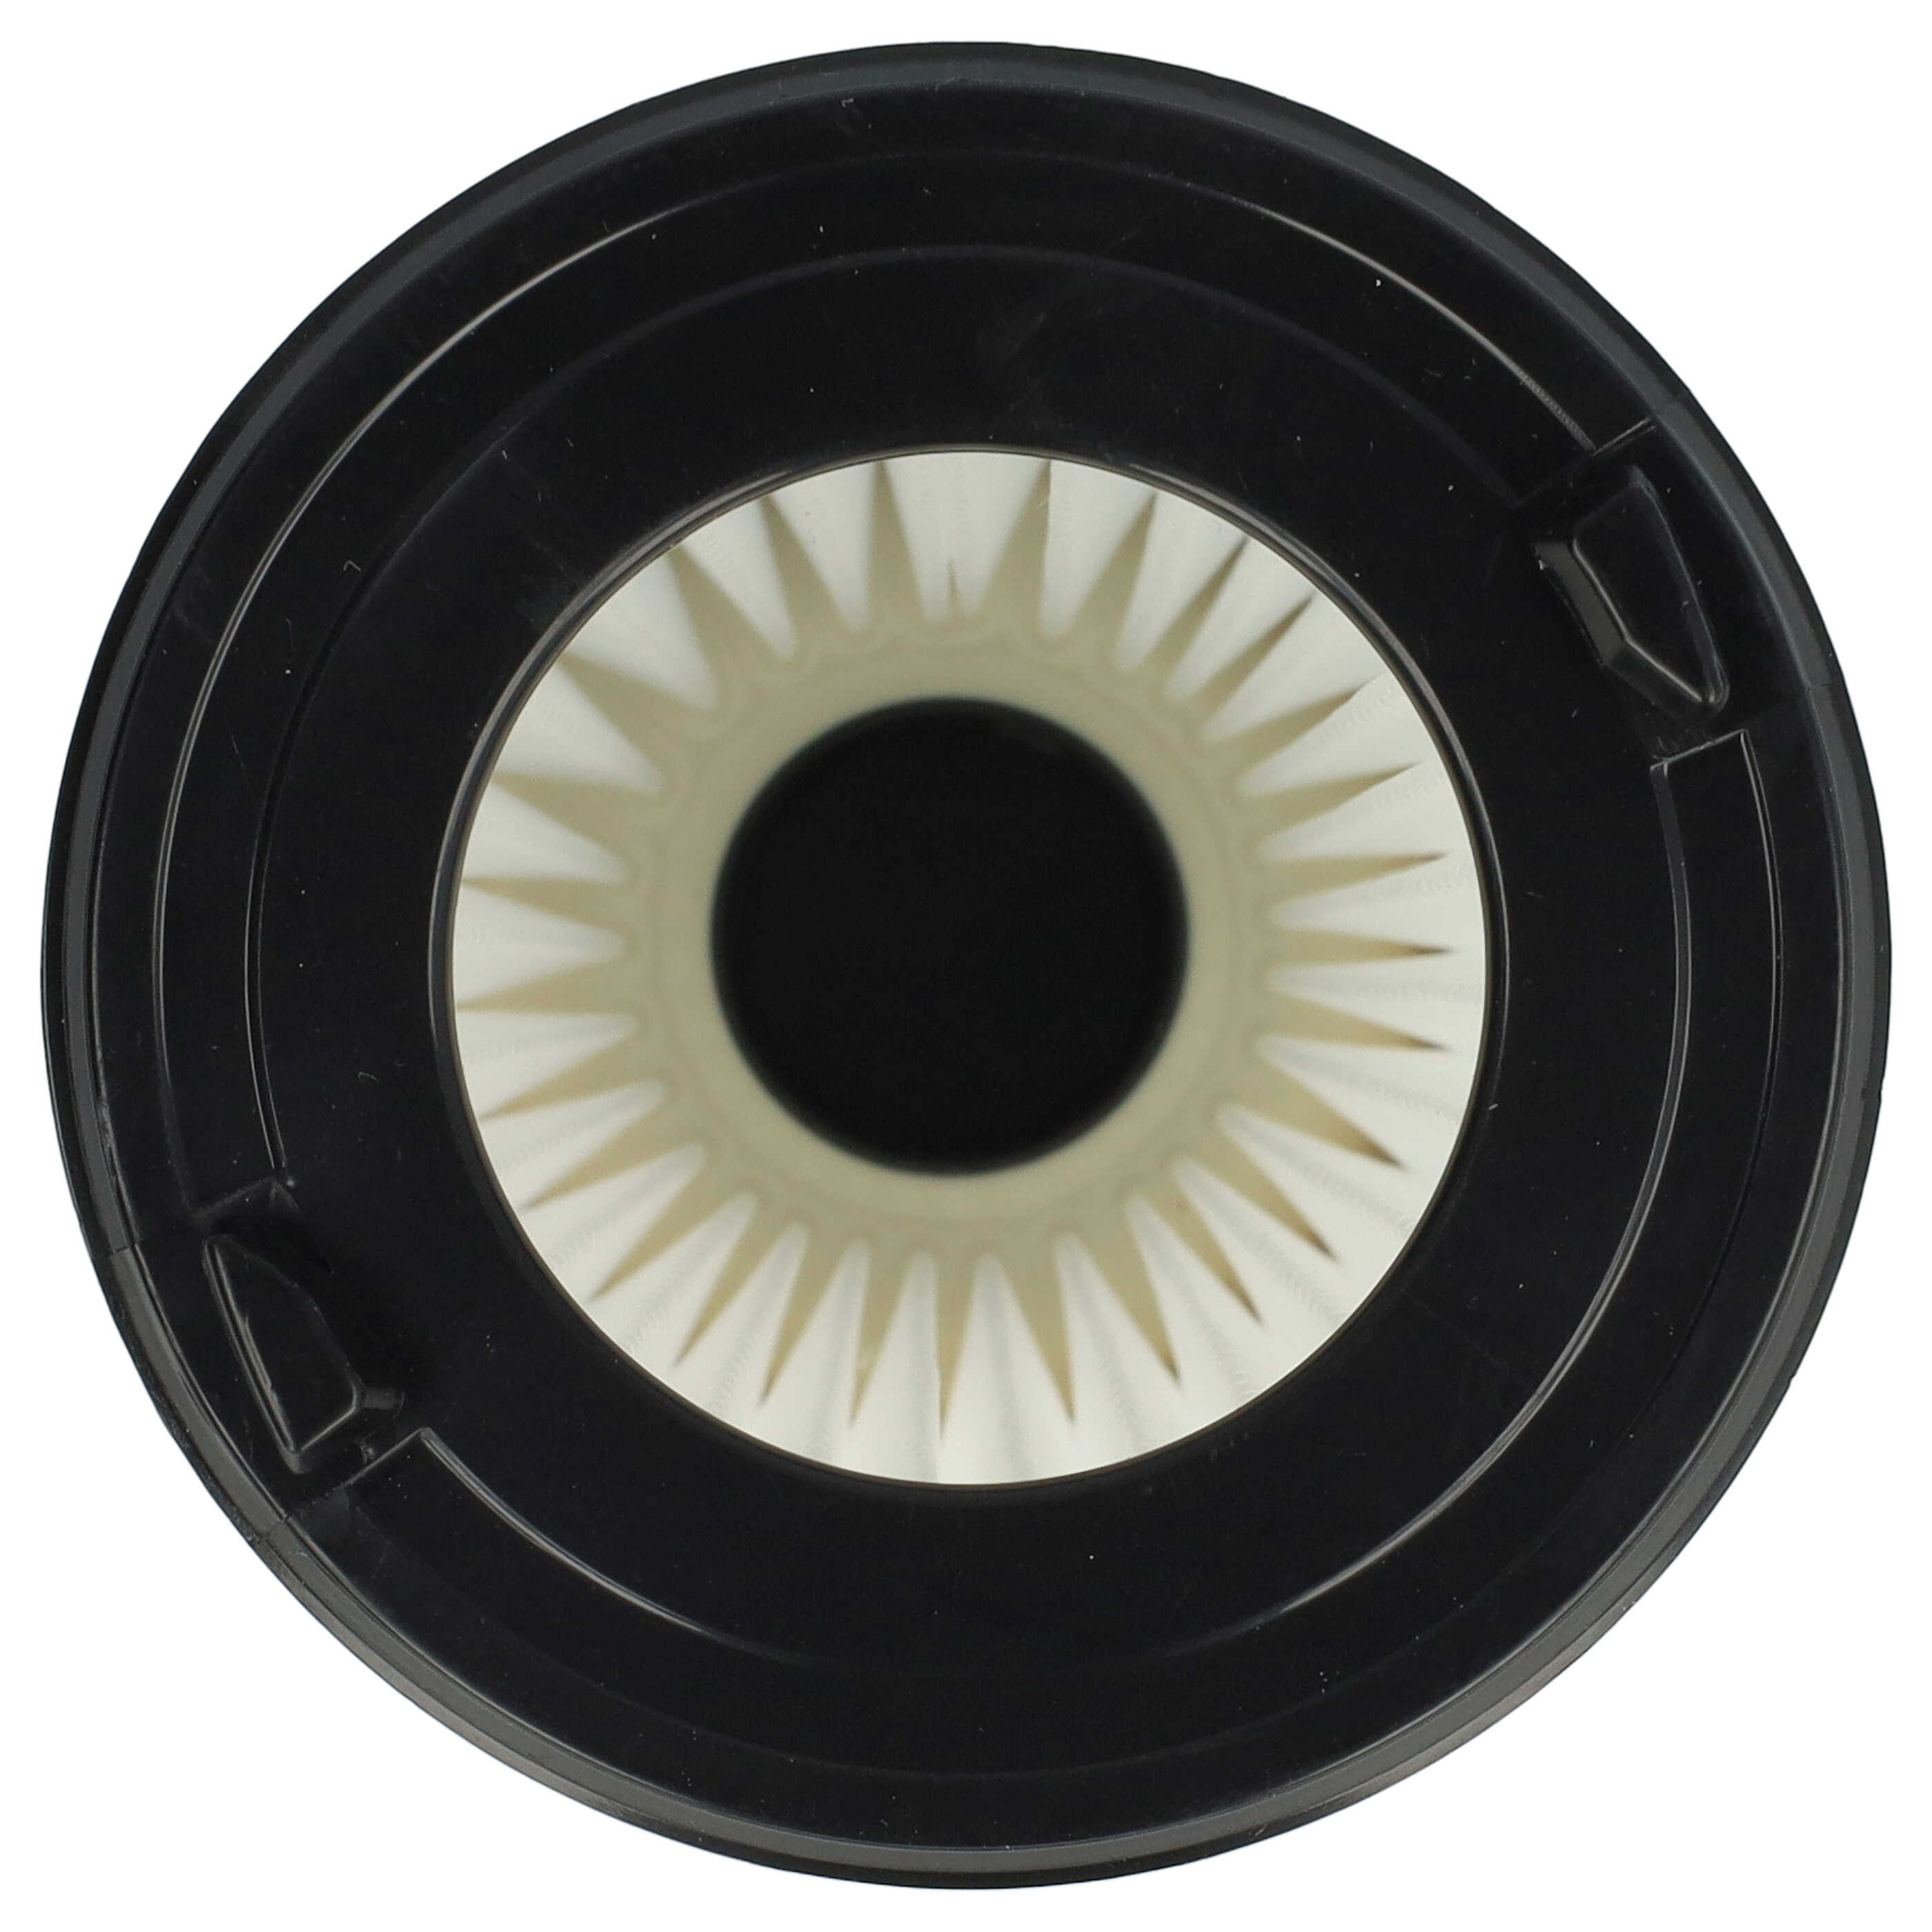 Filtre remplace AEG AEF150, 9001683755, 90094073100 pour aspirateur - filtre à lamelles